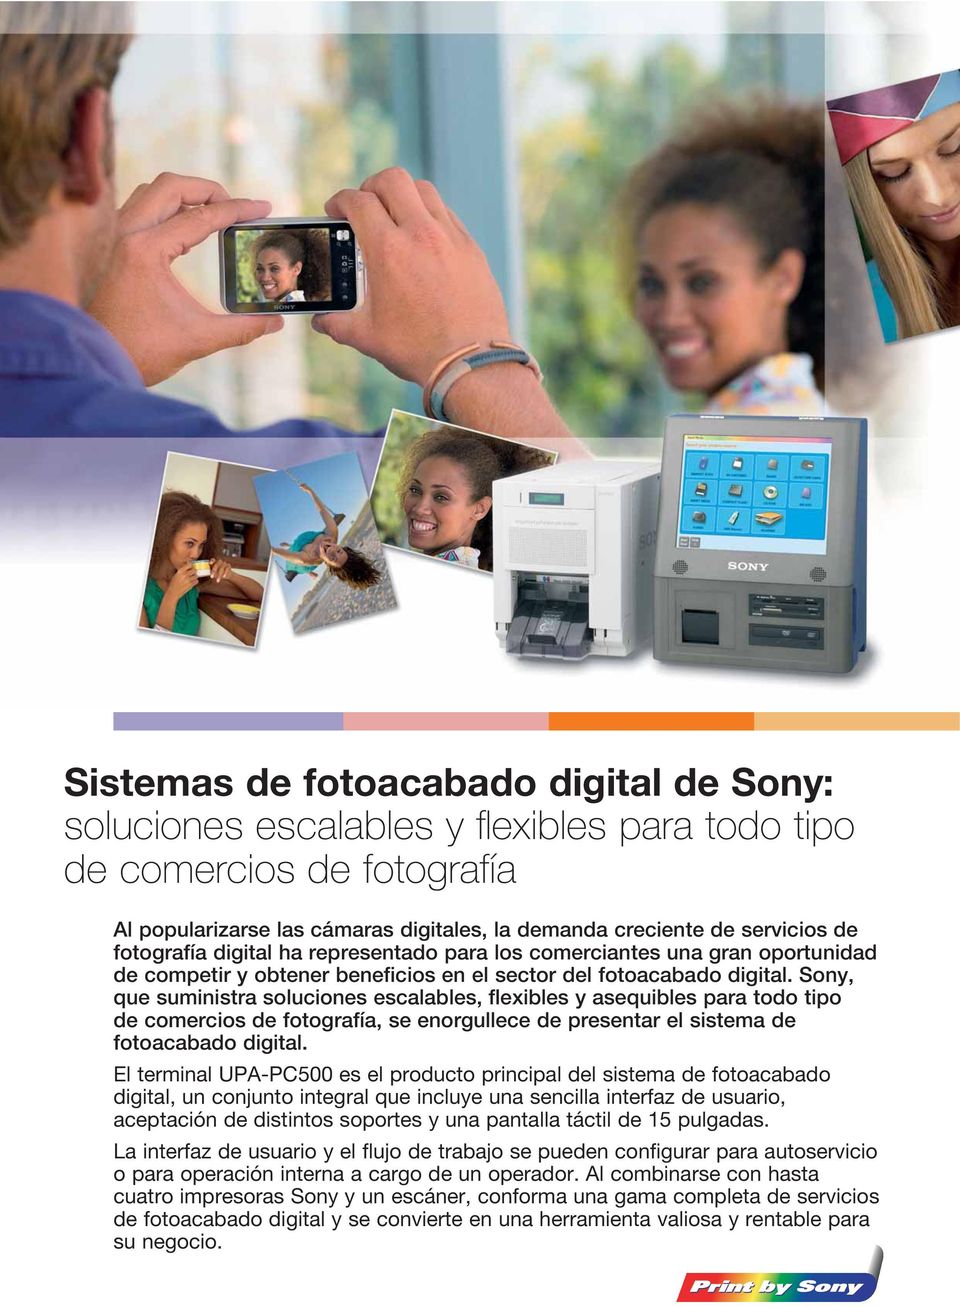 Sony, que suministra soluciones escalables, flexibles y asequibles para todo tipo de comercios de fotografía, se enorgullece de presentar el sistema de fotoacabado digital.